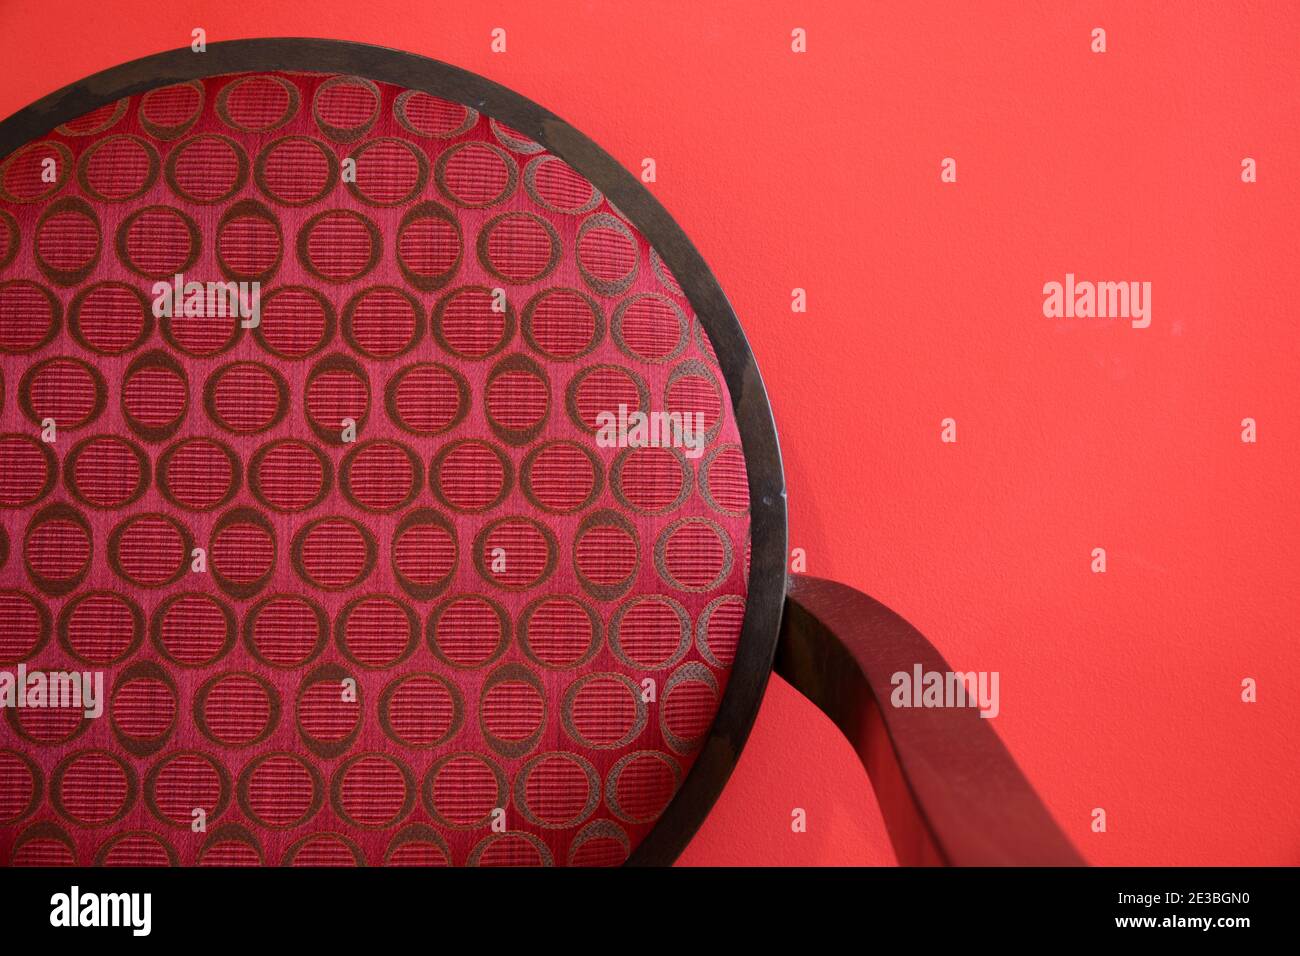 Détails minimalistes abstraits de la chaise moderne avec chaise ronde à l'arrière Photographié contre un mur rouge Banque D'Images